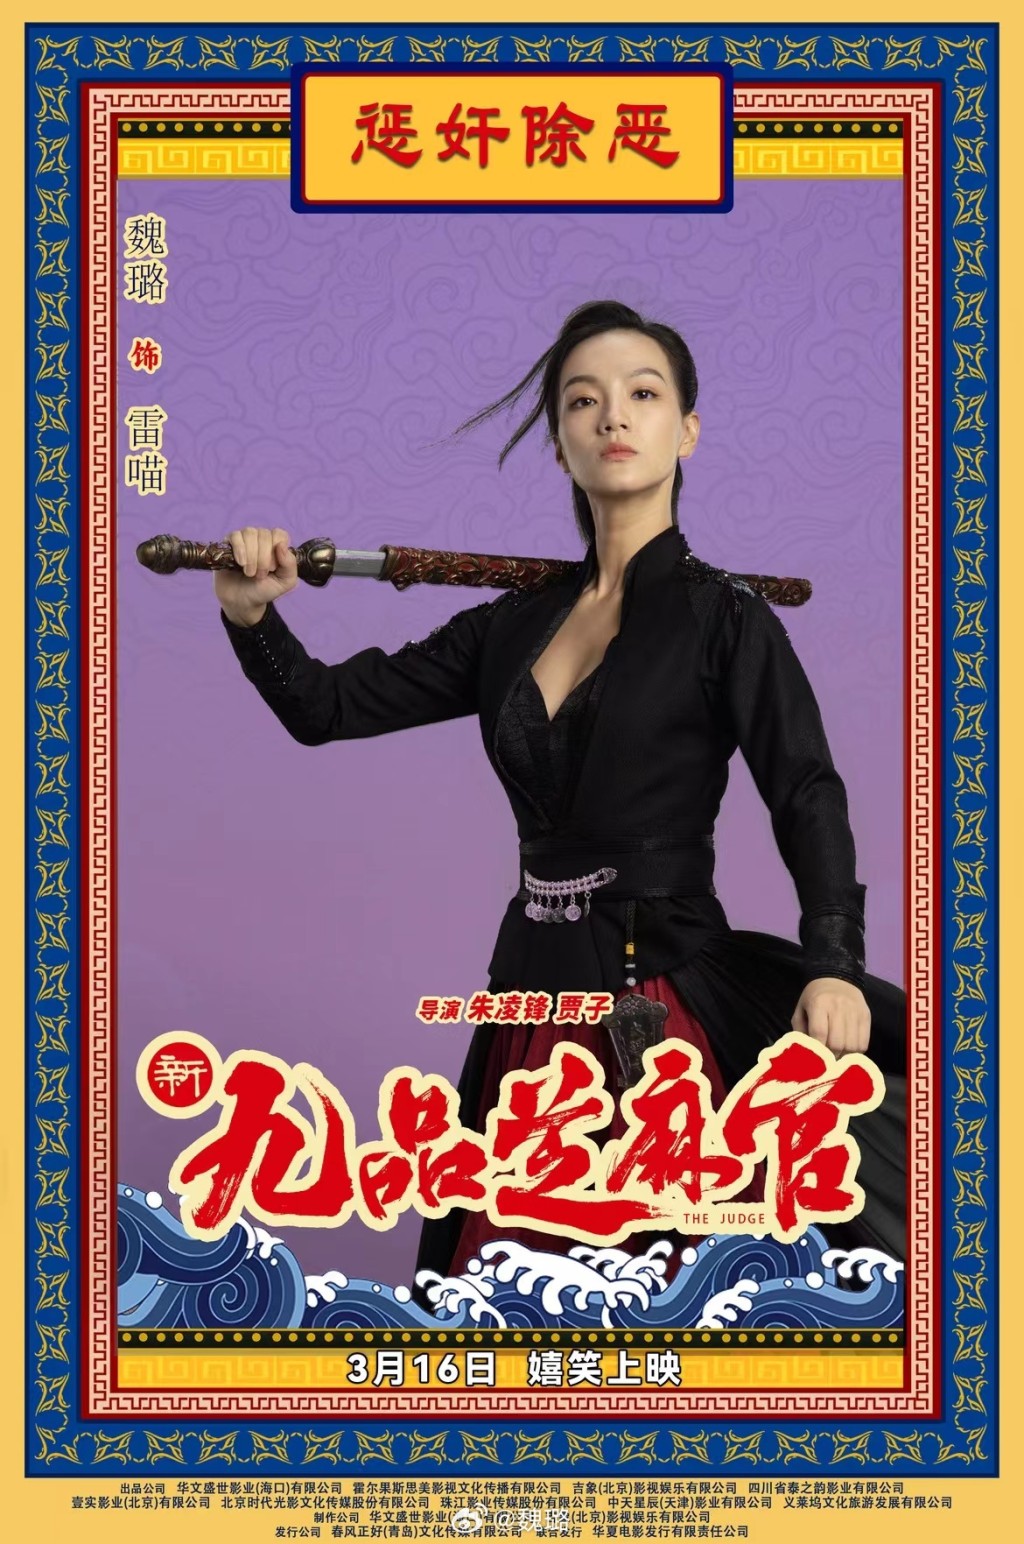 徐锦江当年饰演的「雷豹」竟然离奇变成女角色，由内地女星魏璐饰演。